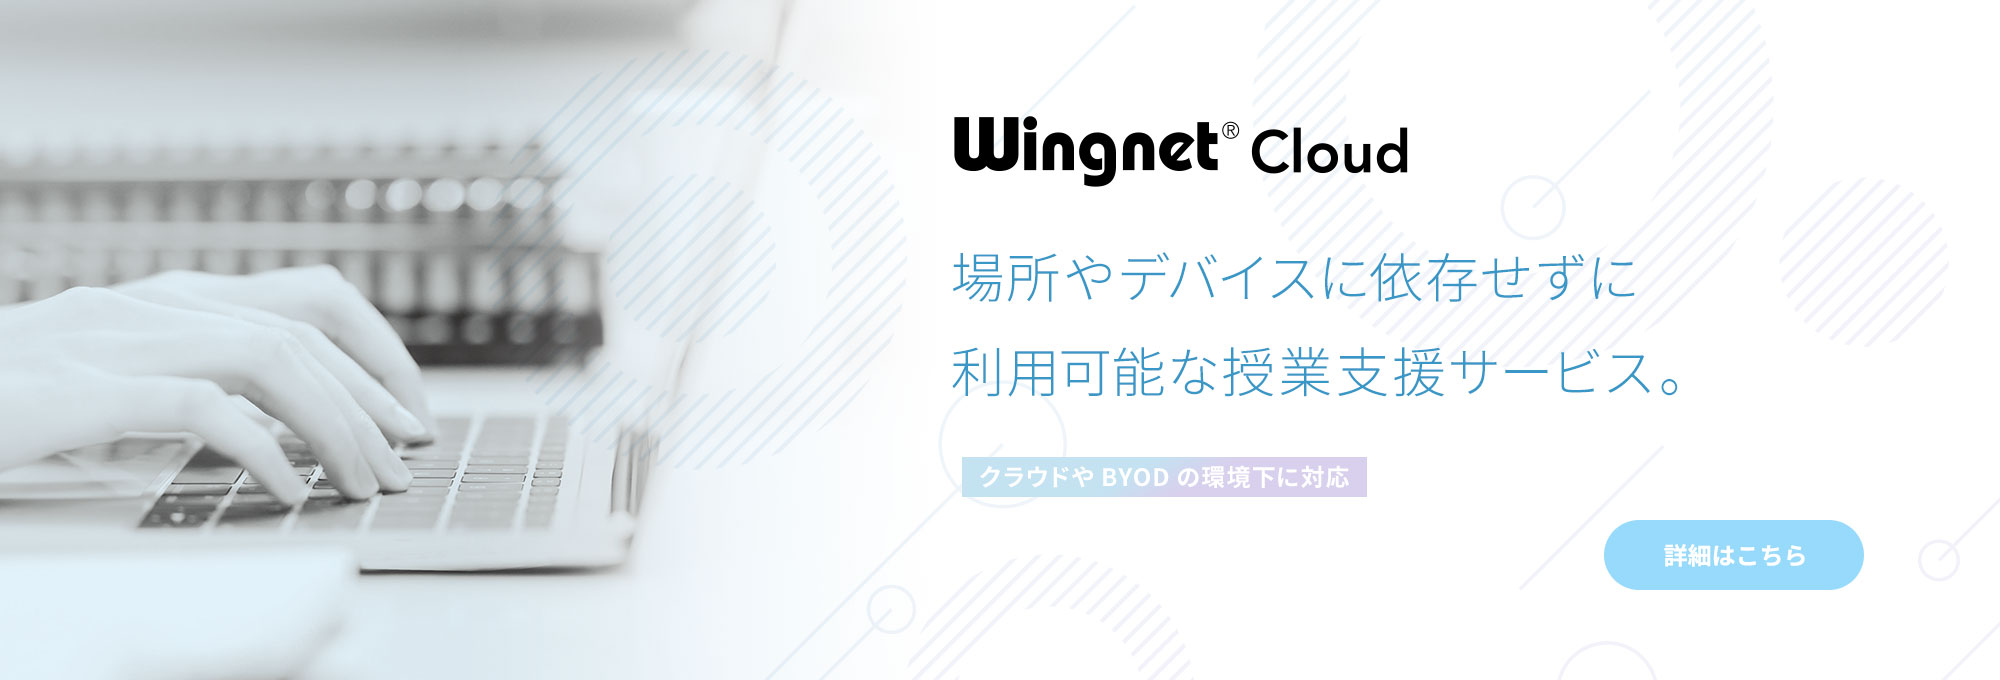 Wingnet Cloud